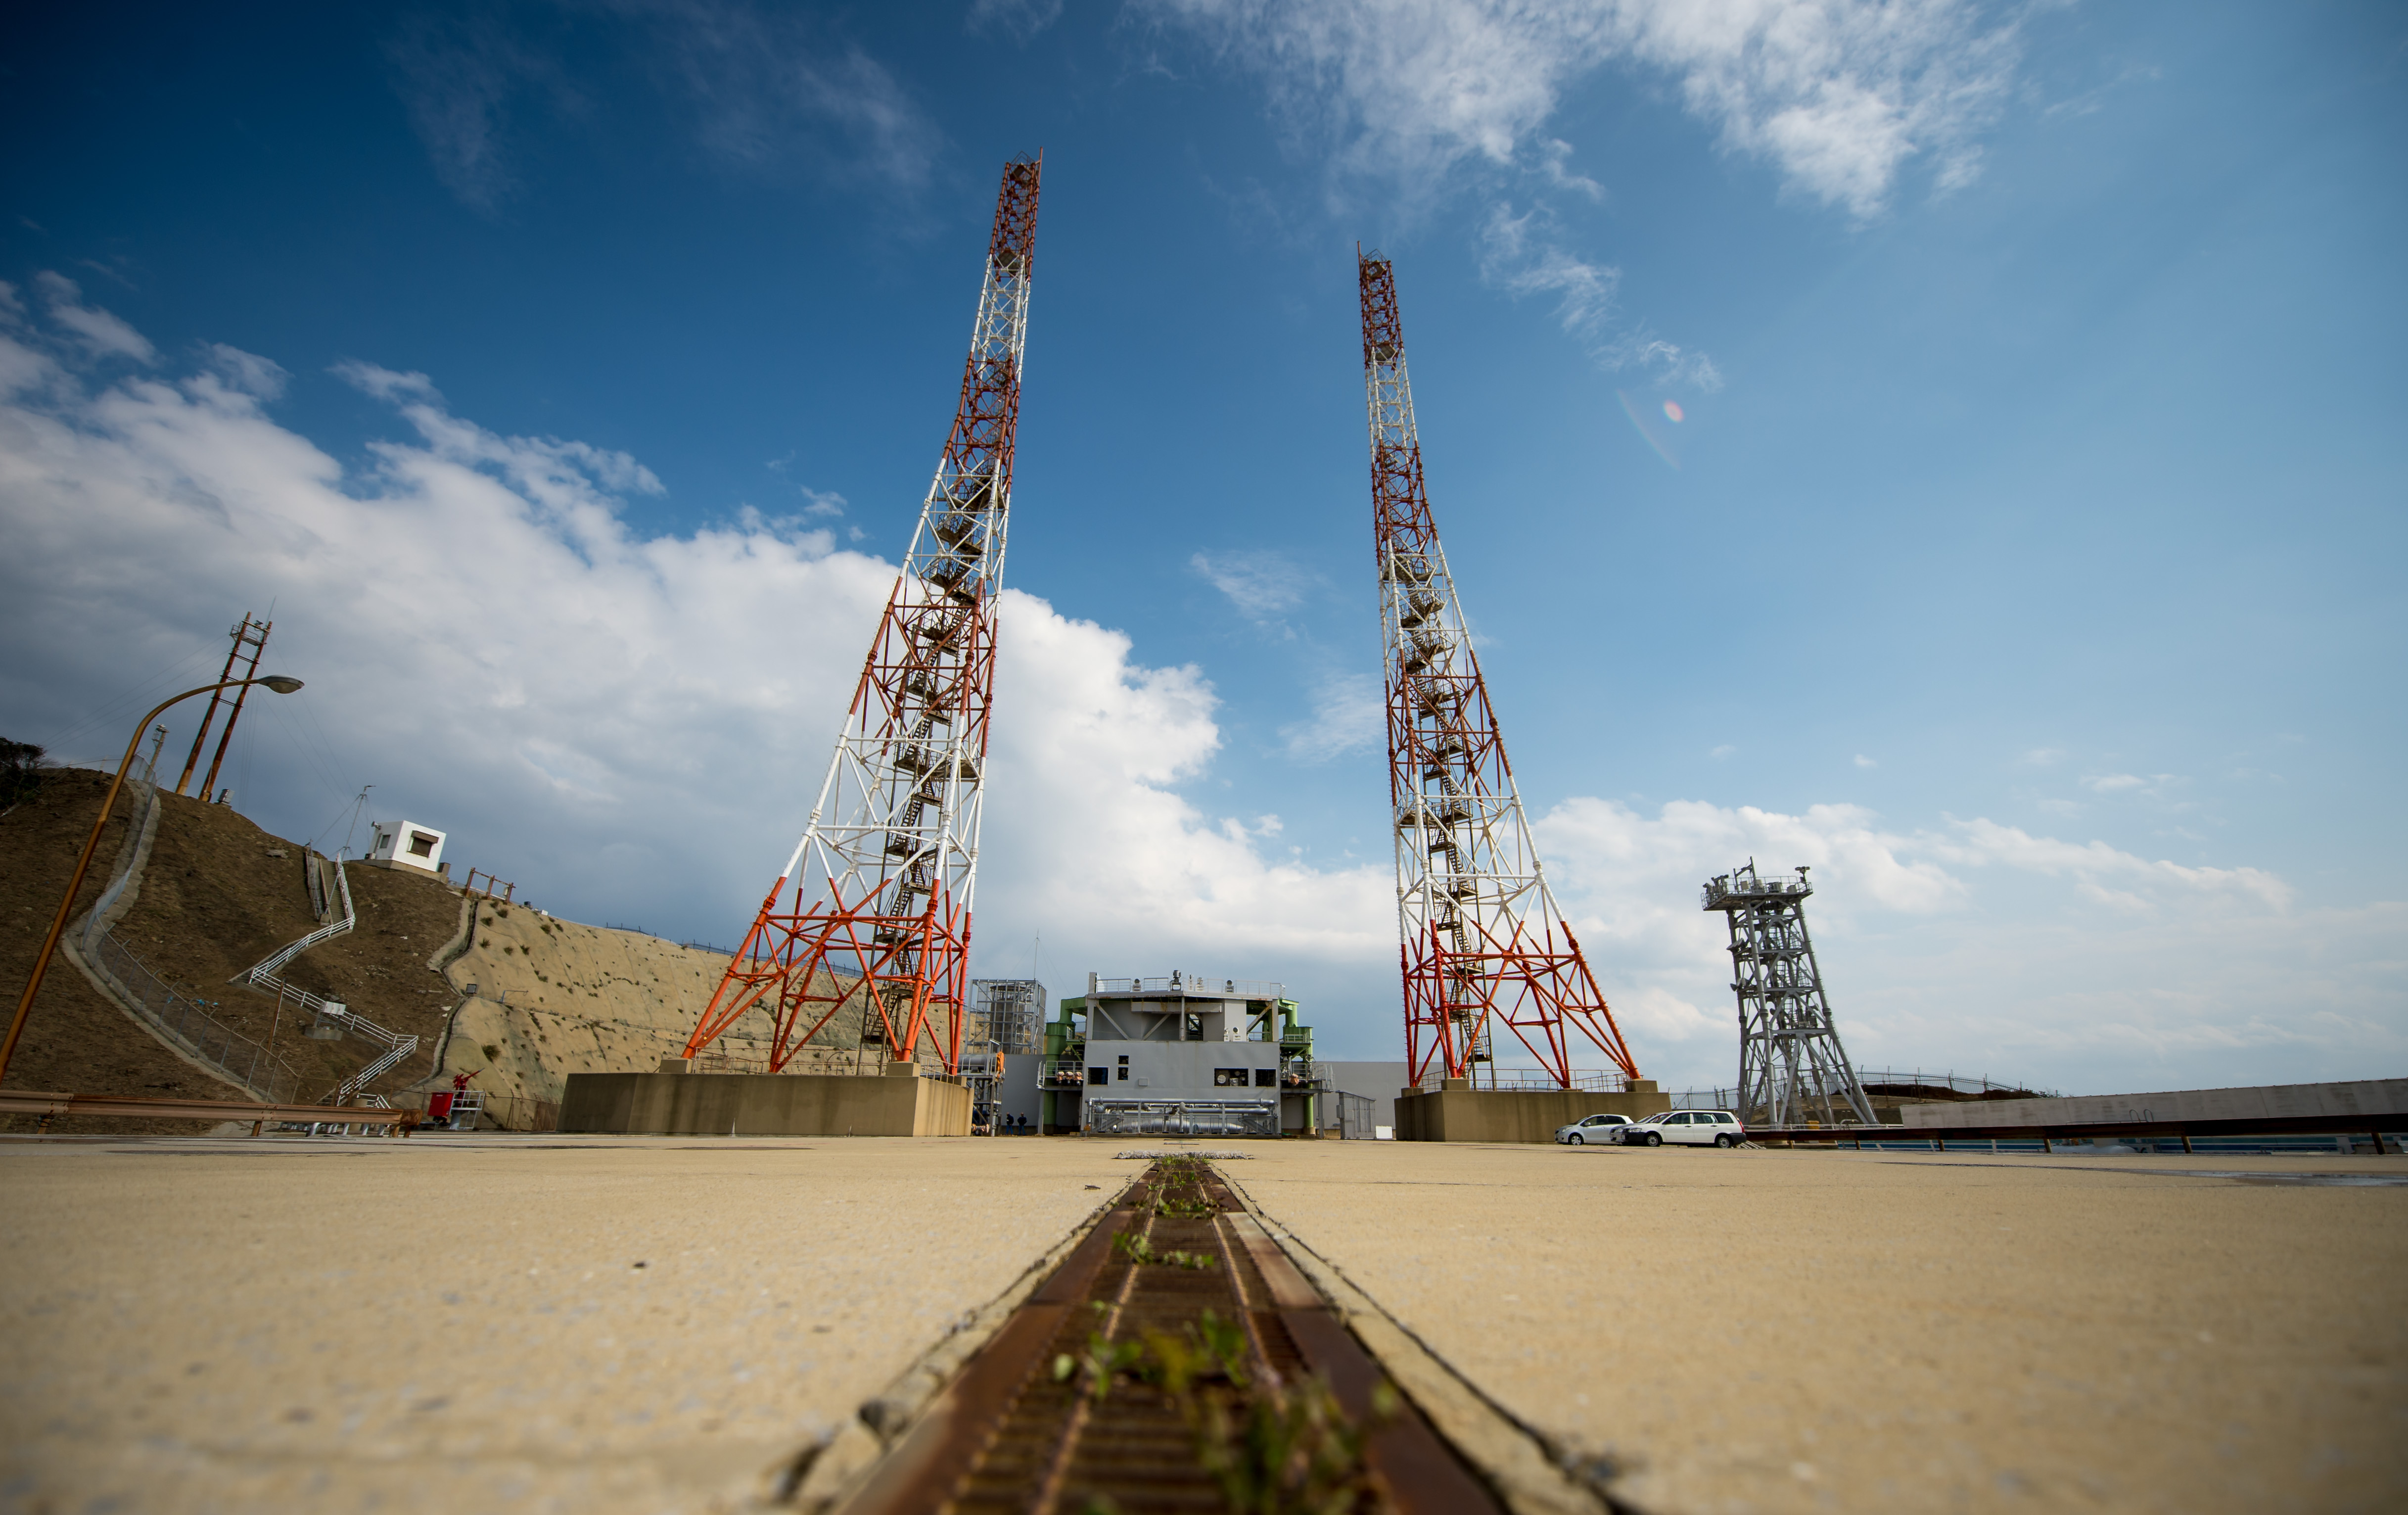 Tanegashima: Japan's Largest Space Center